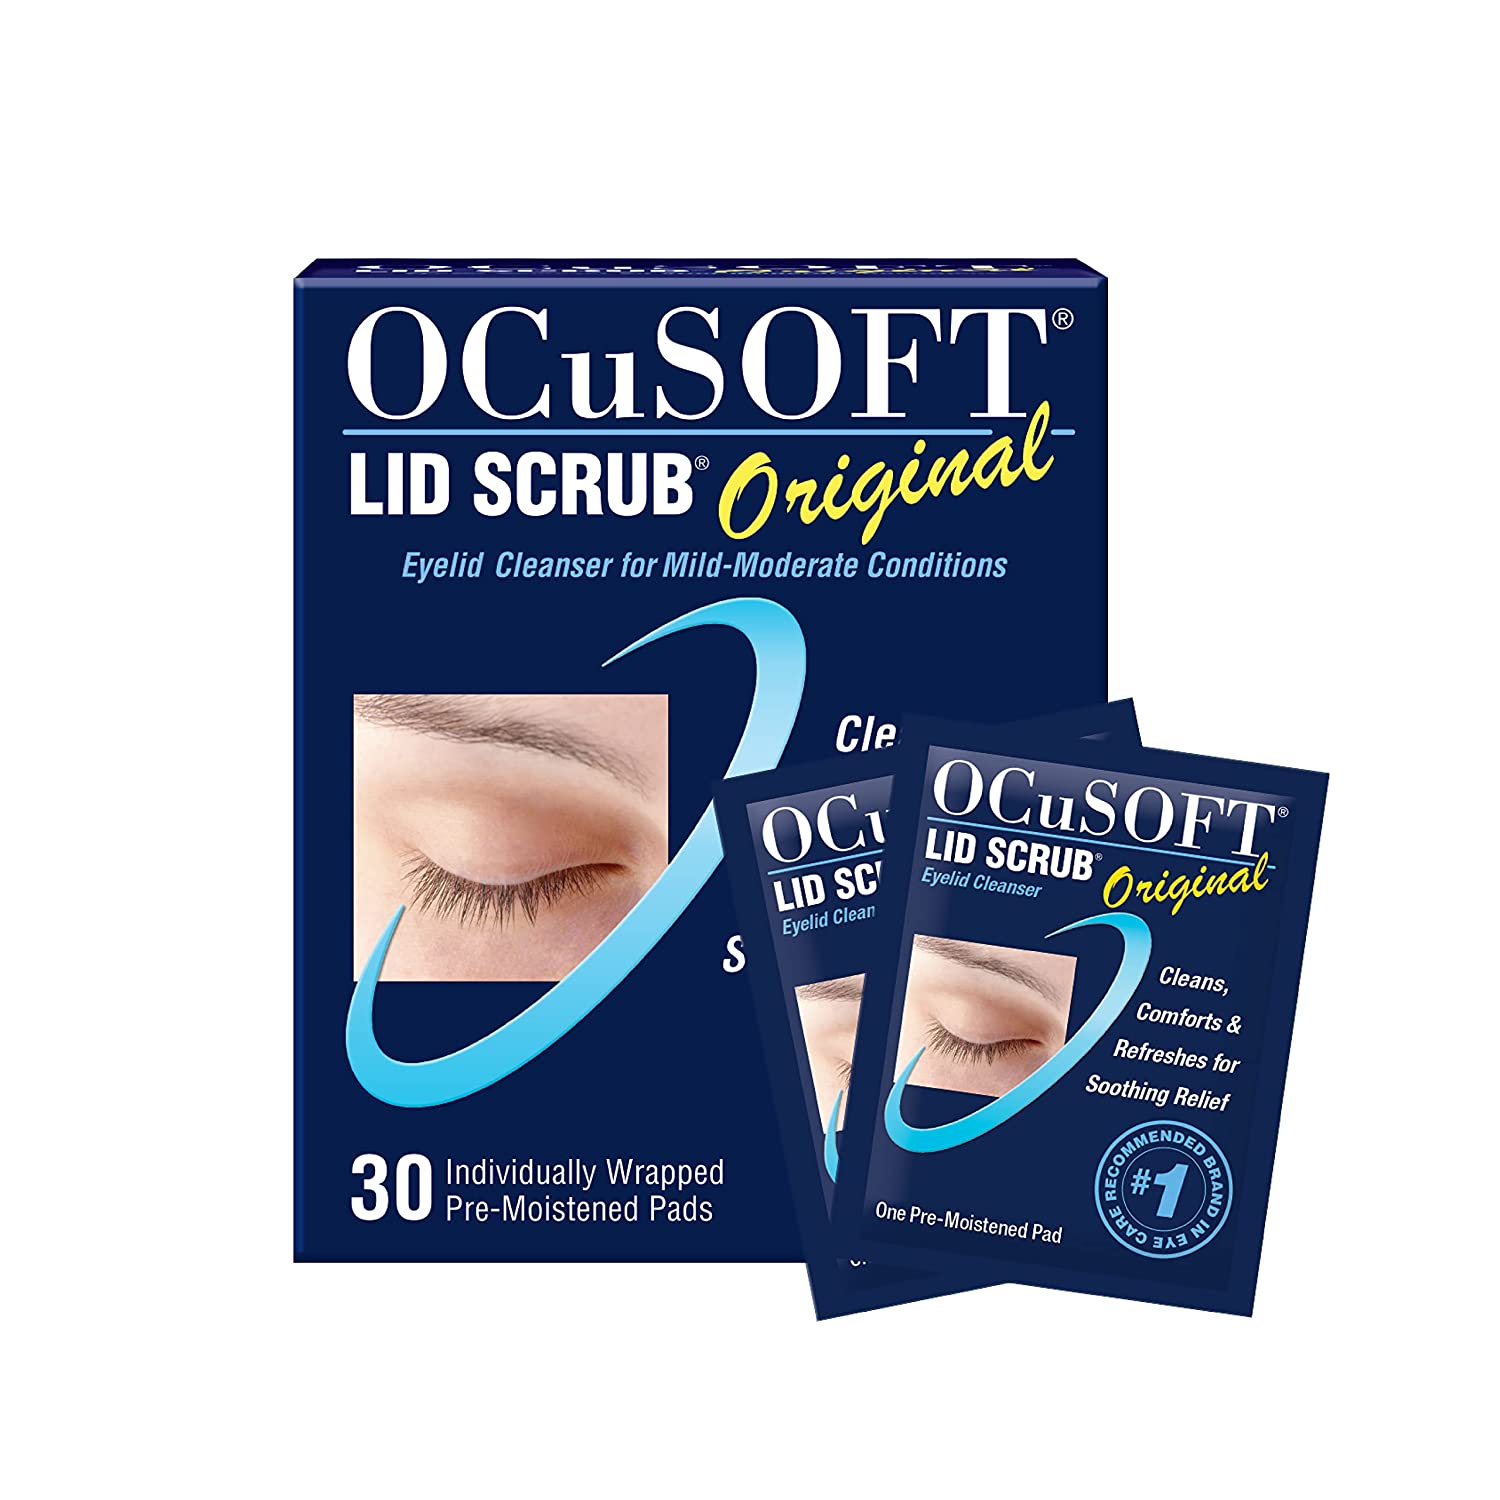 Review of OCuSOFT Lid Scrub Original, Pre-Moistened Pads, 30 Count